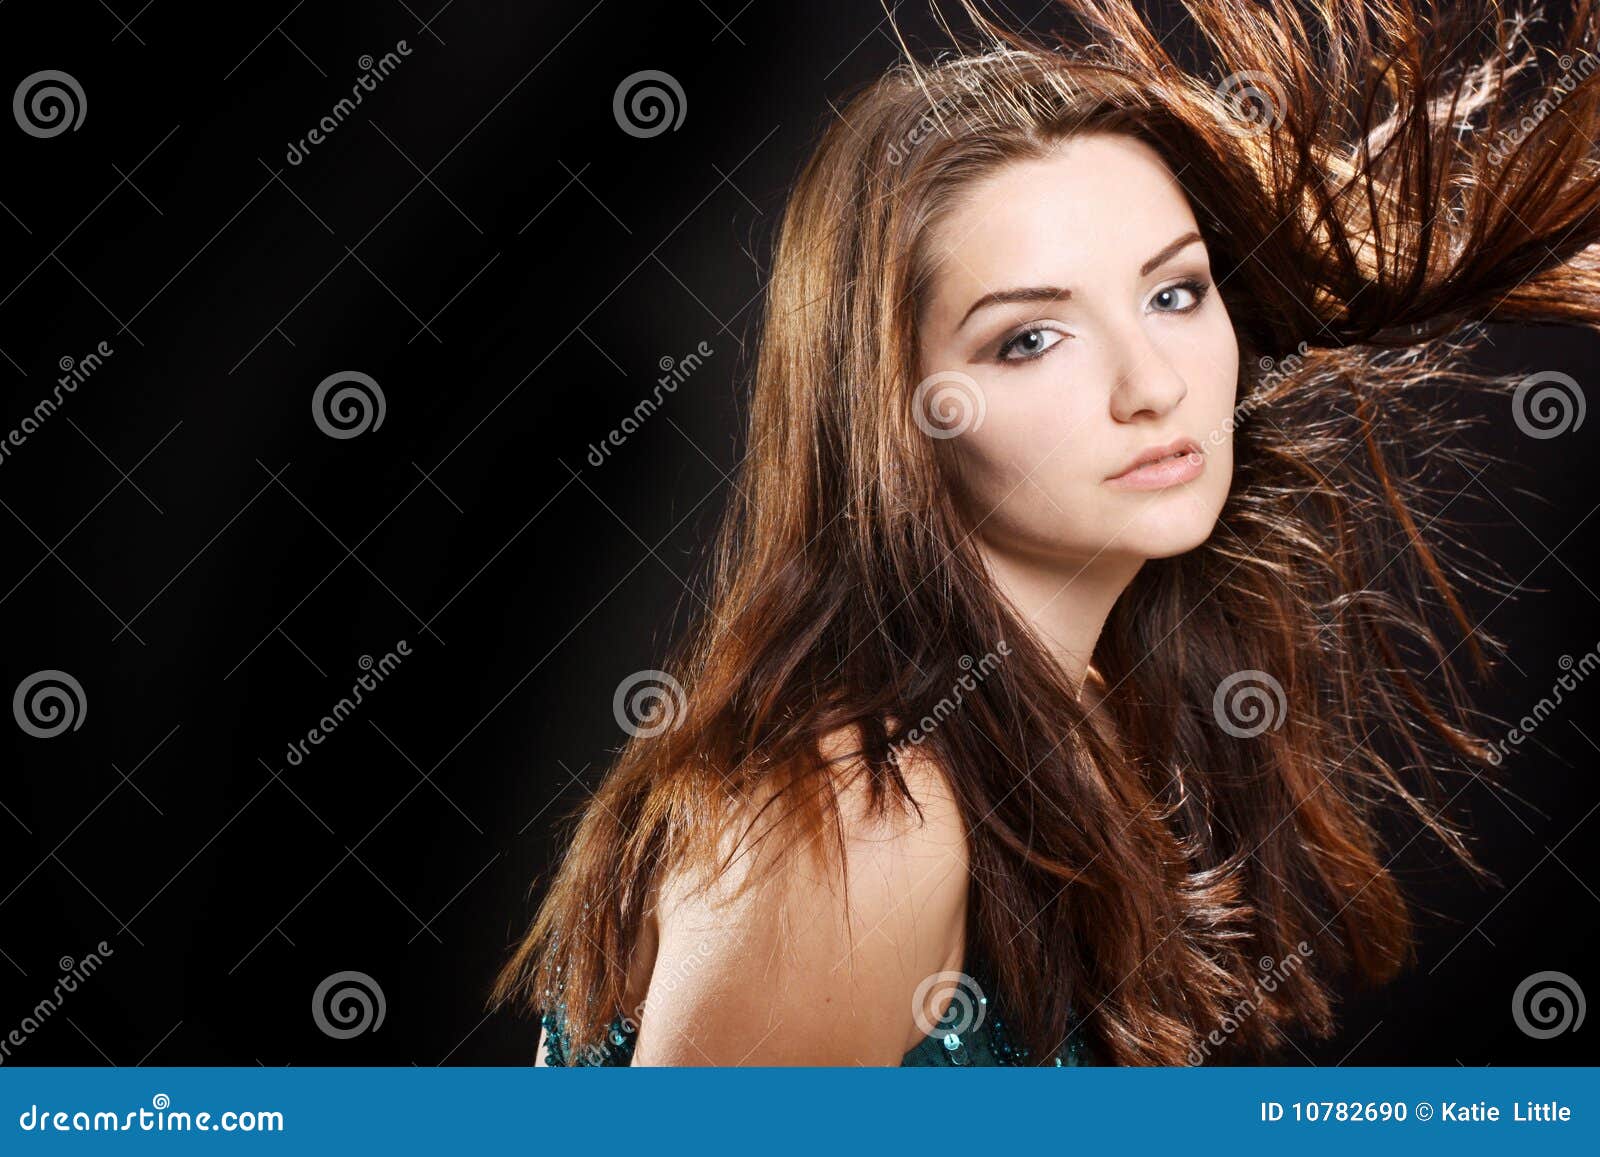 Glamorous woman stock photo. Image of lady, black, eyes - 10782690